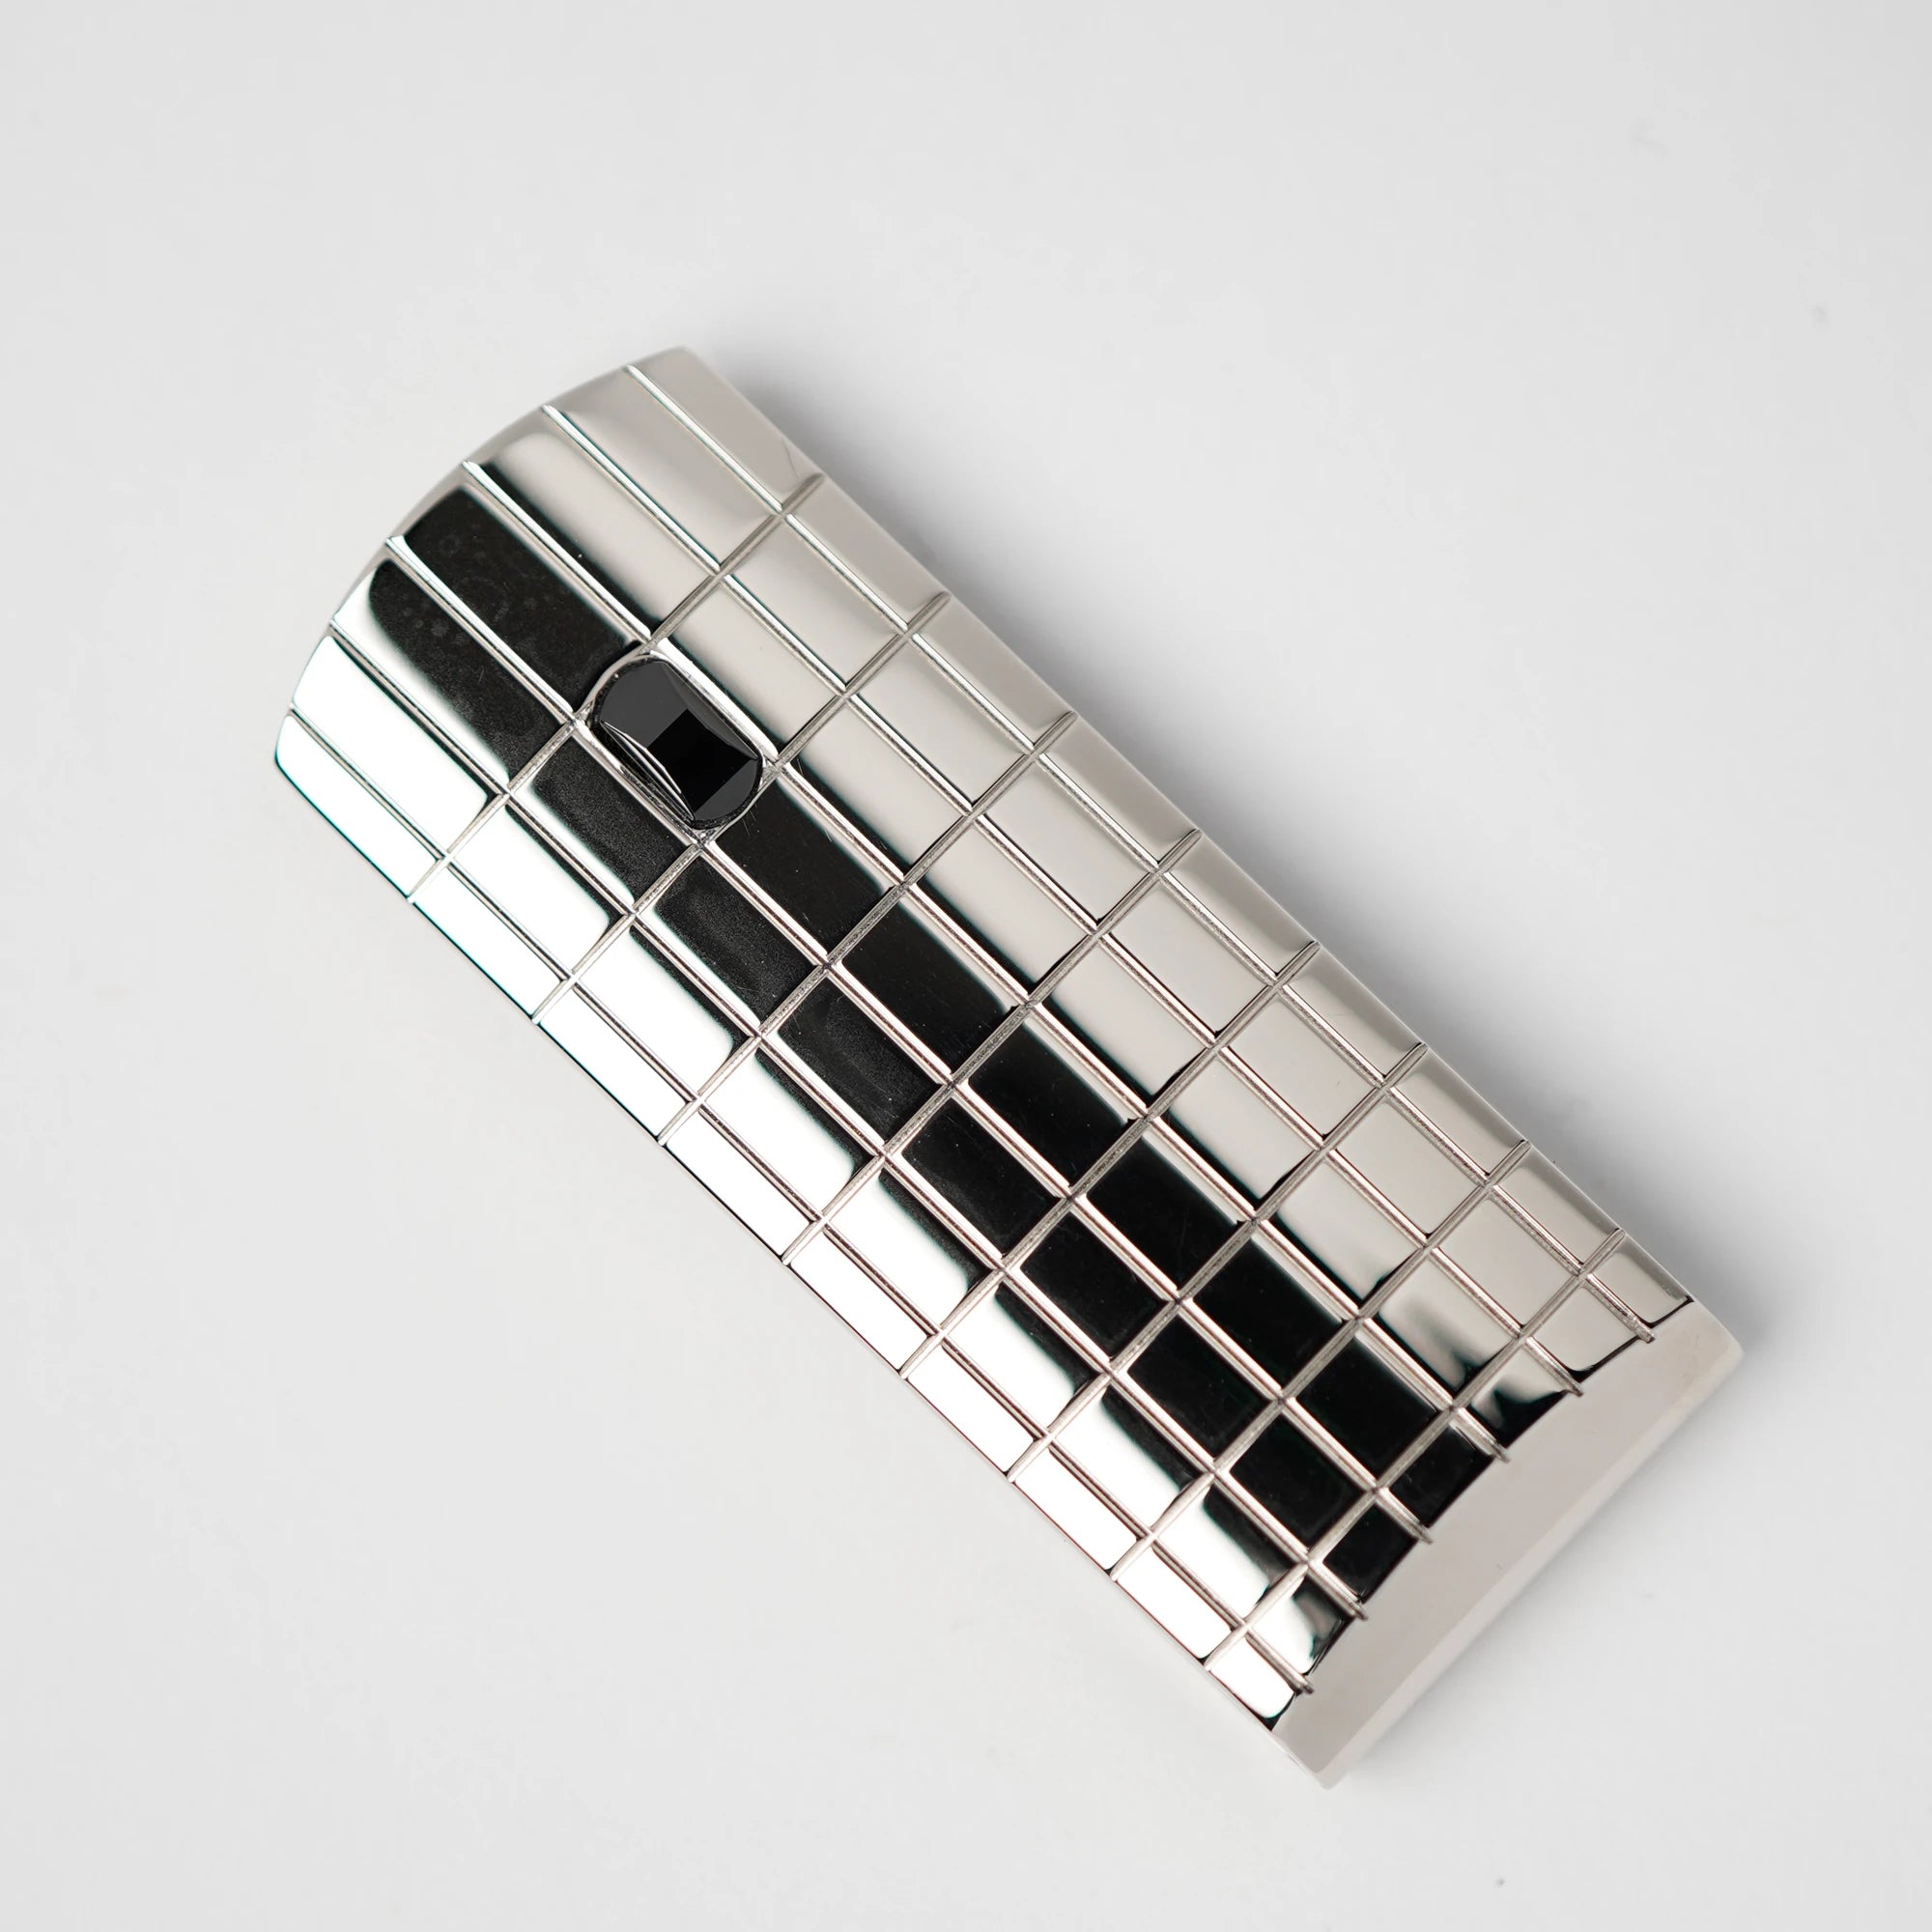 Produktfotografie der Boheme Square Guilloche Geldklammer von Mont Blanc mit silber-polierter Oberfläche